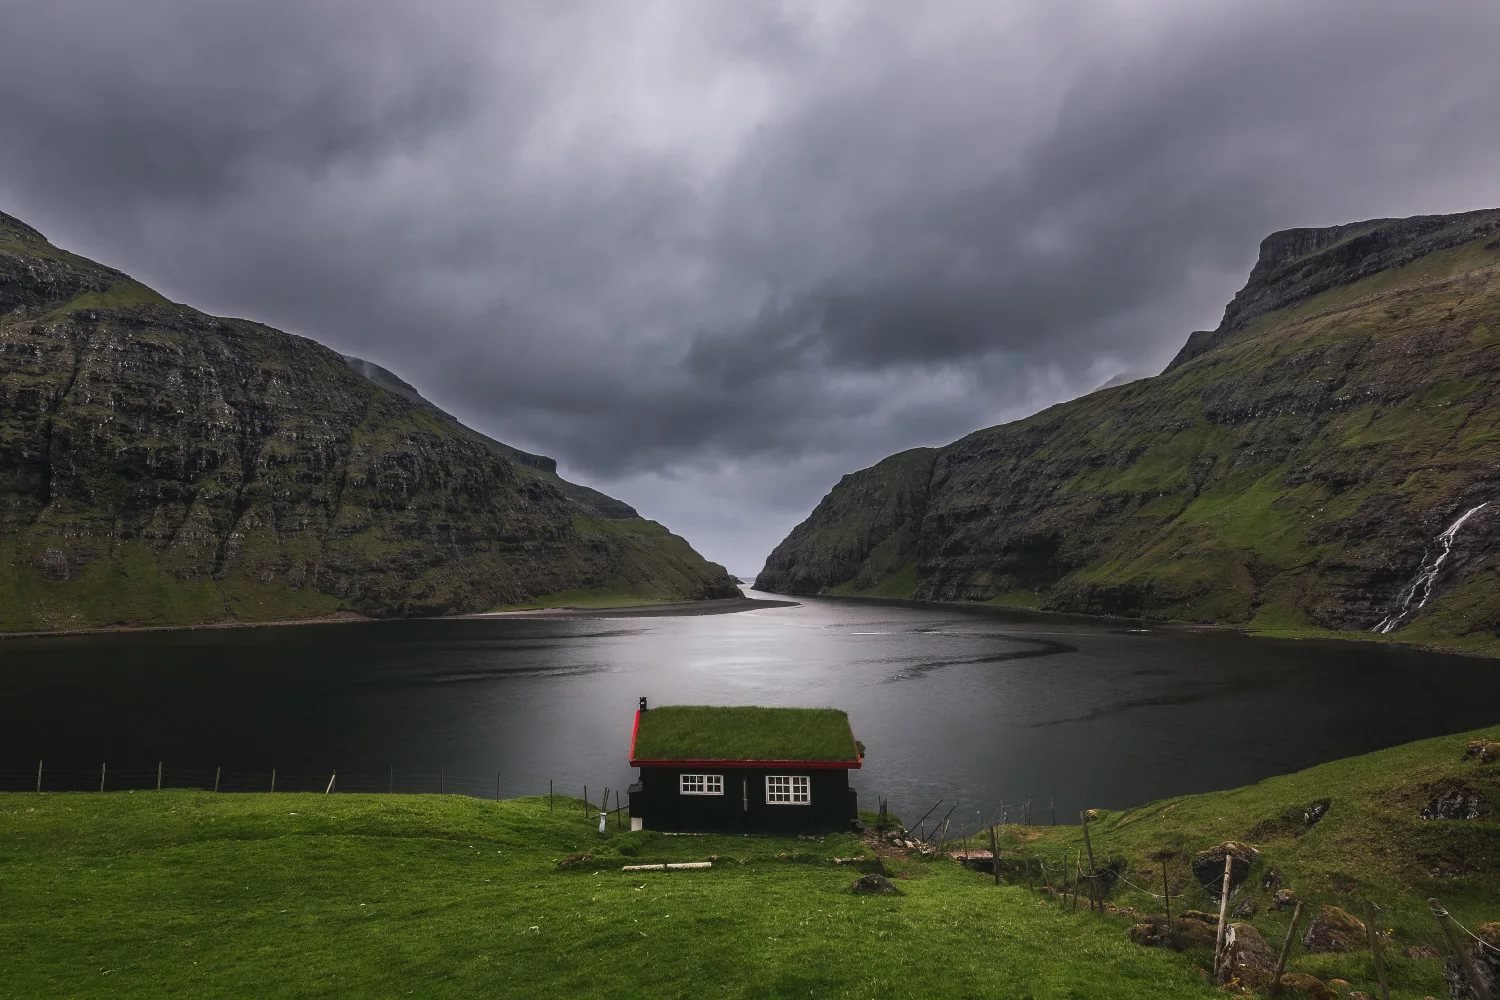 Фарерские острова. Деревня Саксун Фарерские острова. Фарерские острова остров Калсой. Фарерские острова (Faroe Islands), Дания. Озеро Саксун, Фарерские острова.